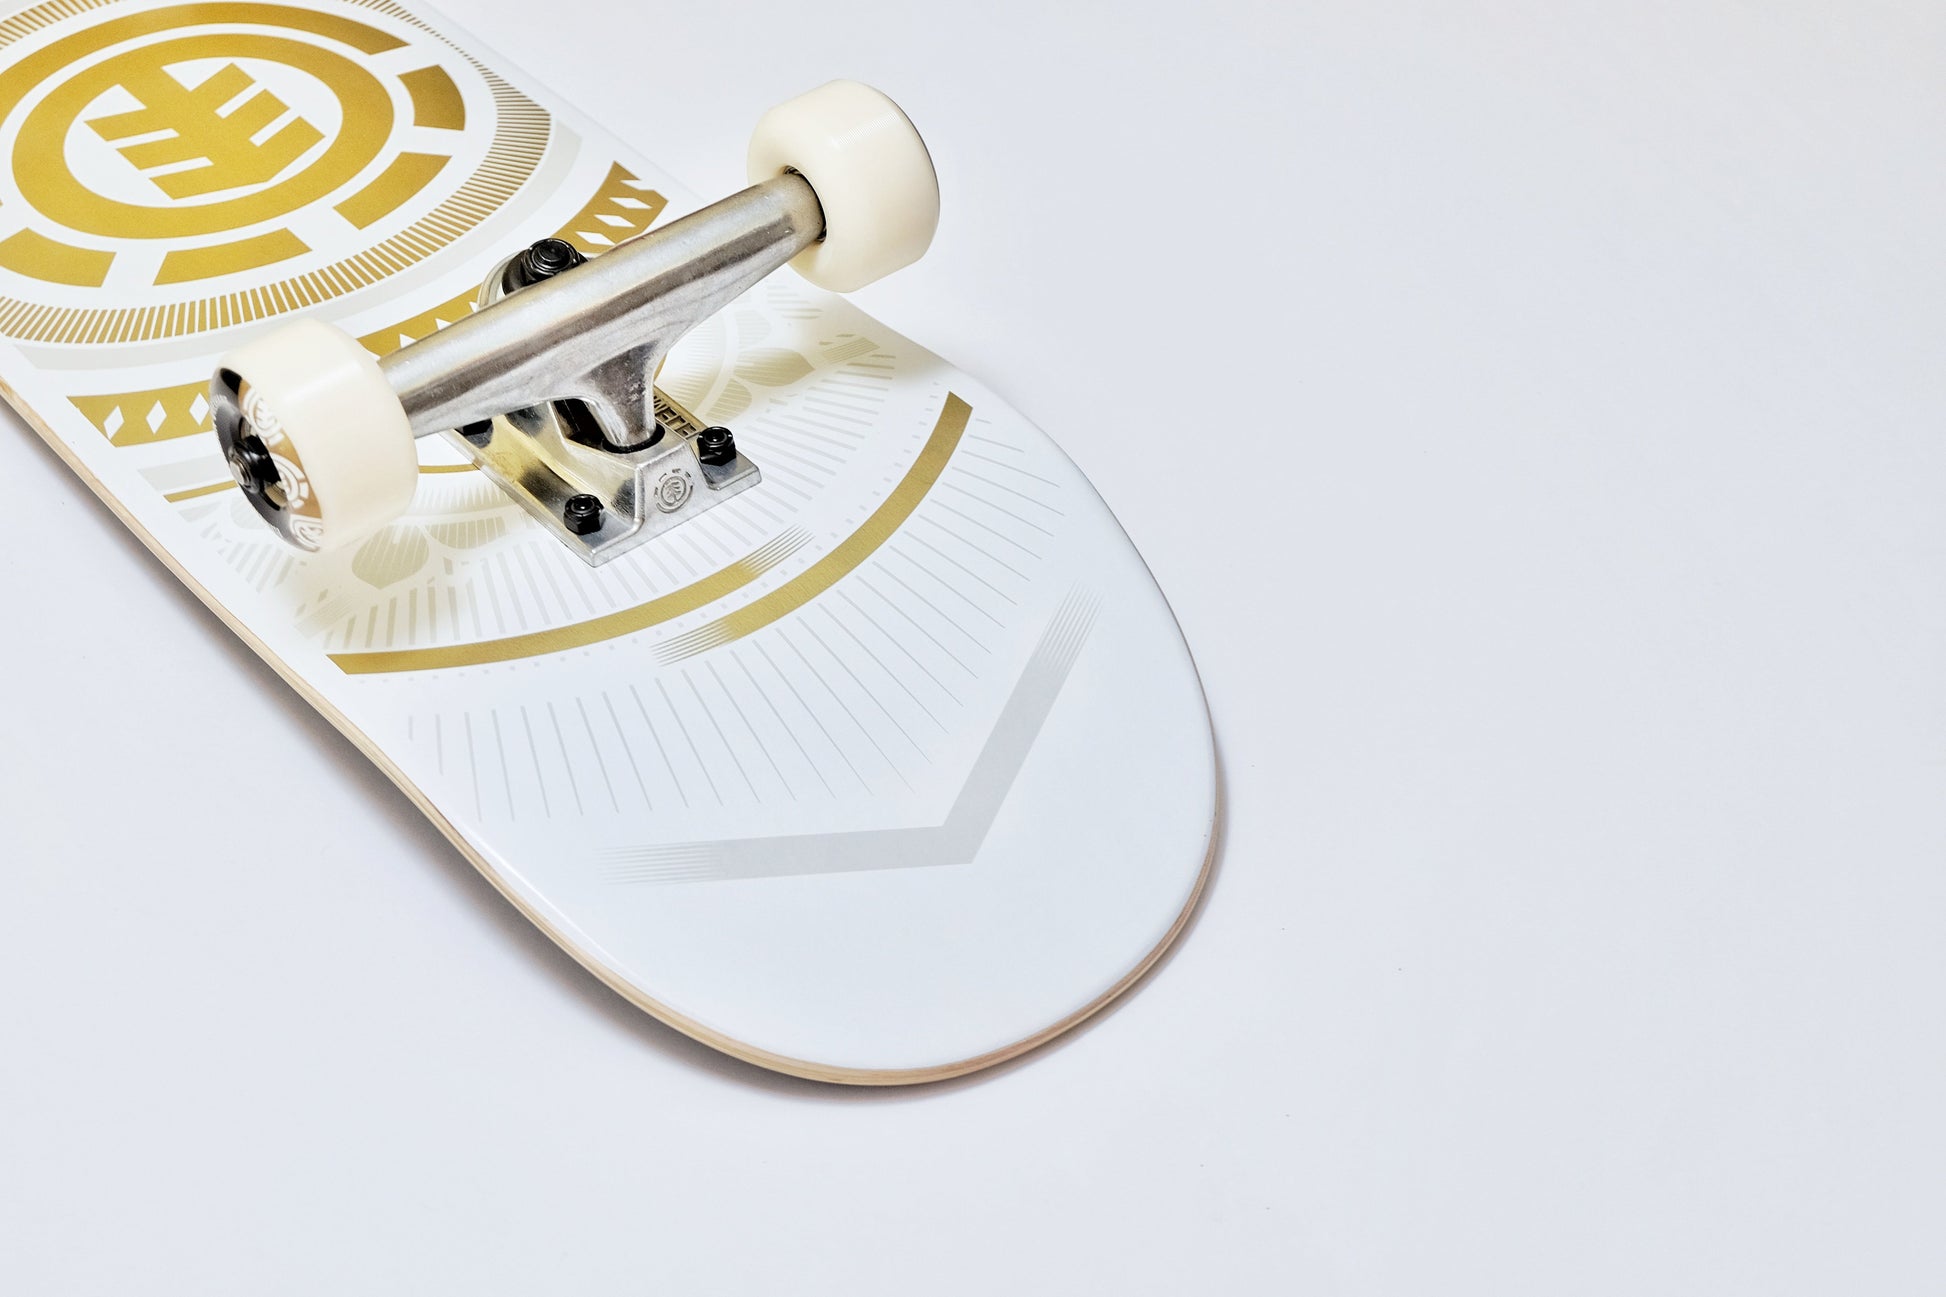 Element Hatched White skateboard - SkatebruhSG